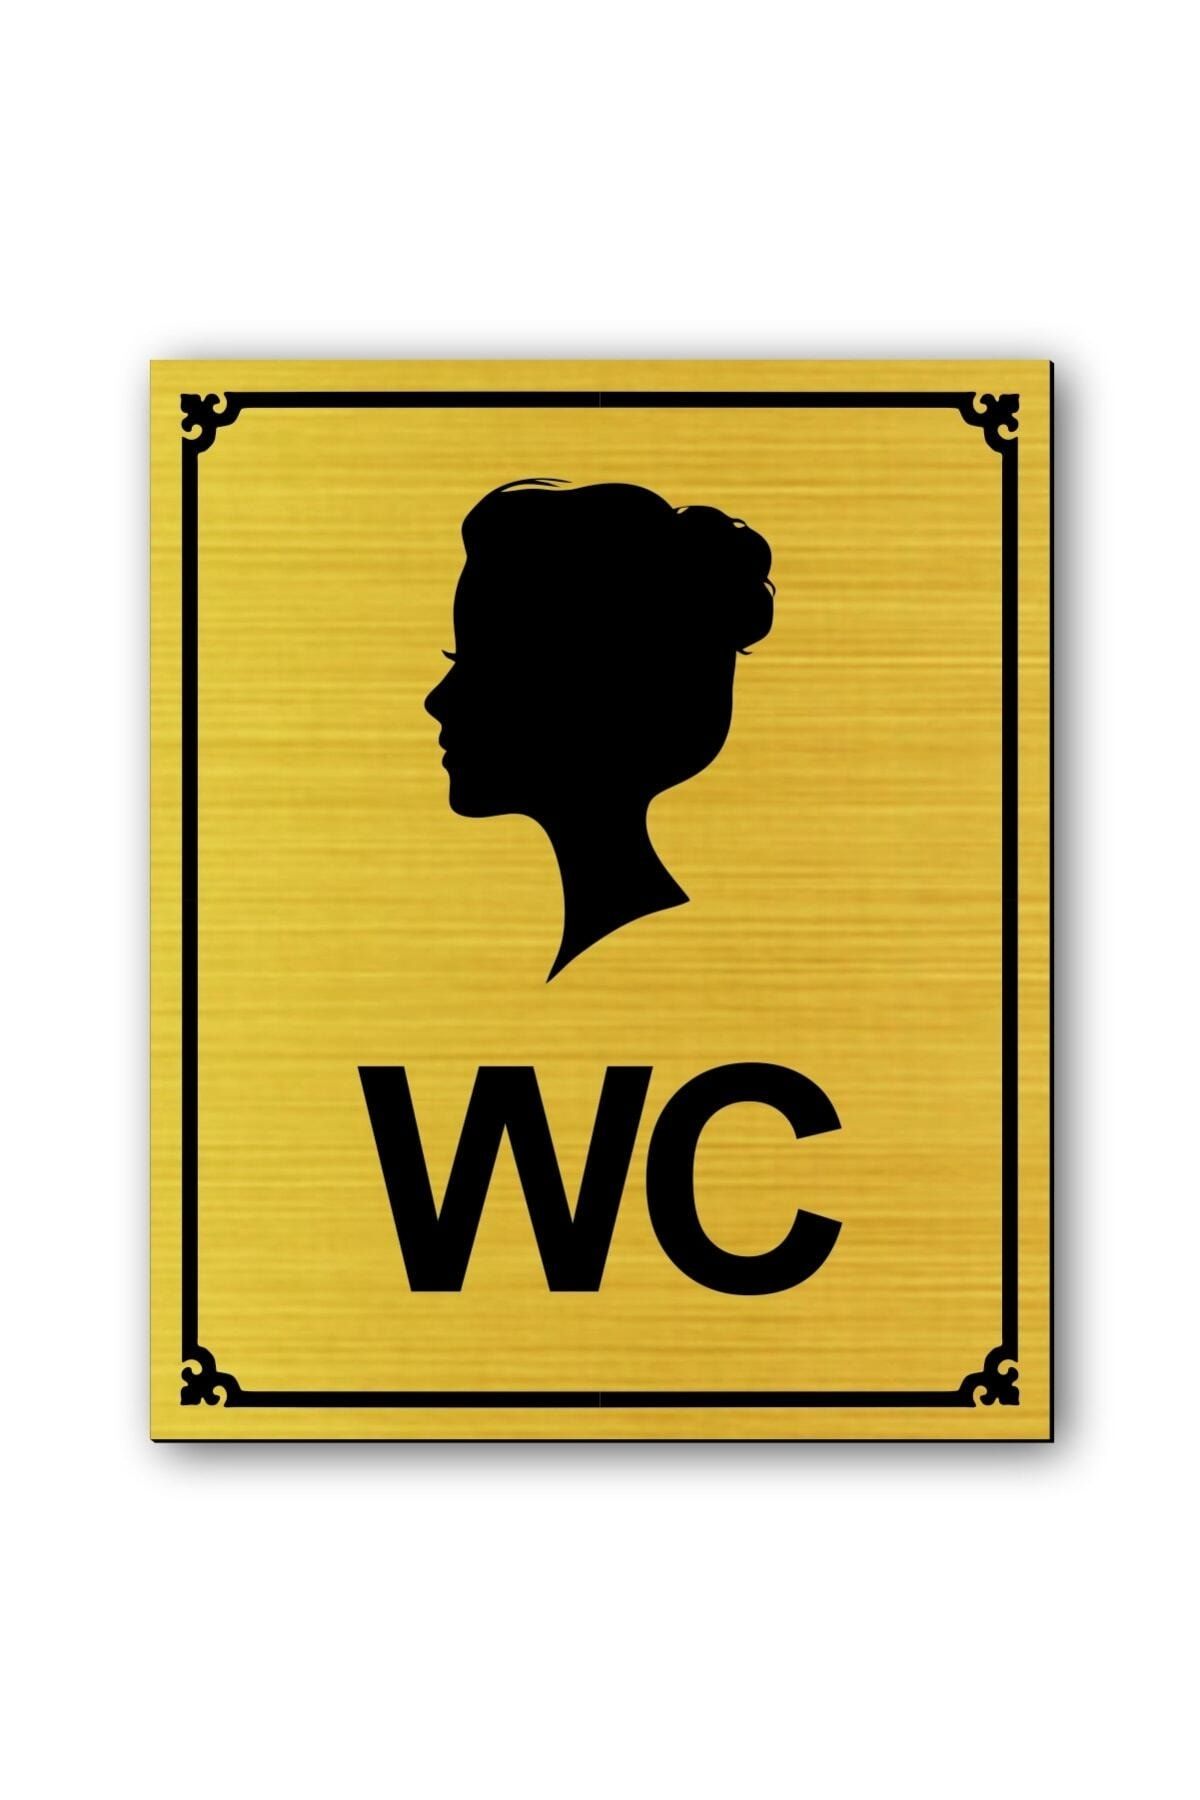 hediyemyoldaa Kadın Tuvalet Figür Kapı Uyarı Yönlendirme Levhası Altın Renkli 10 cmx12 cm